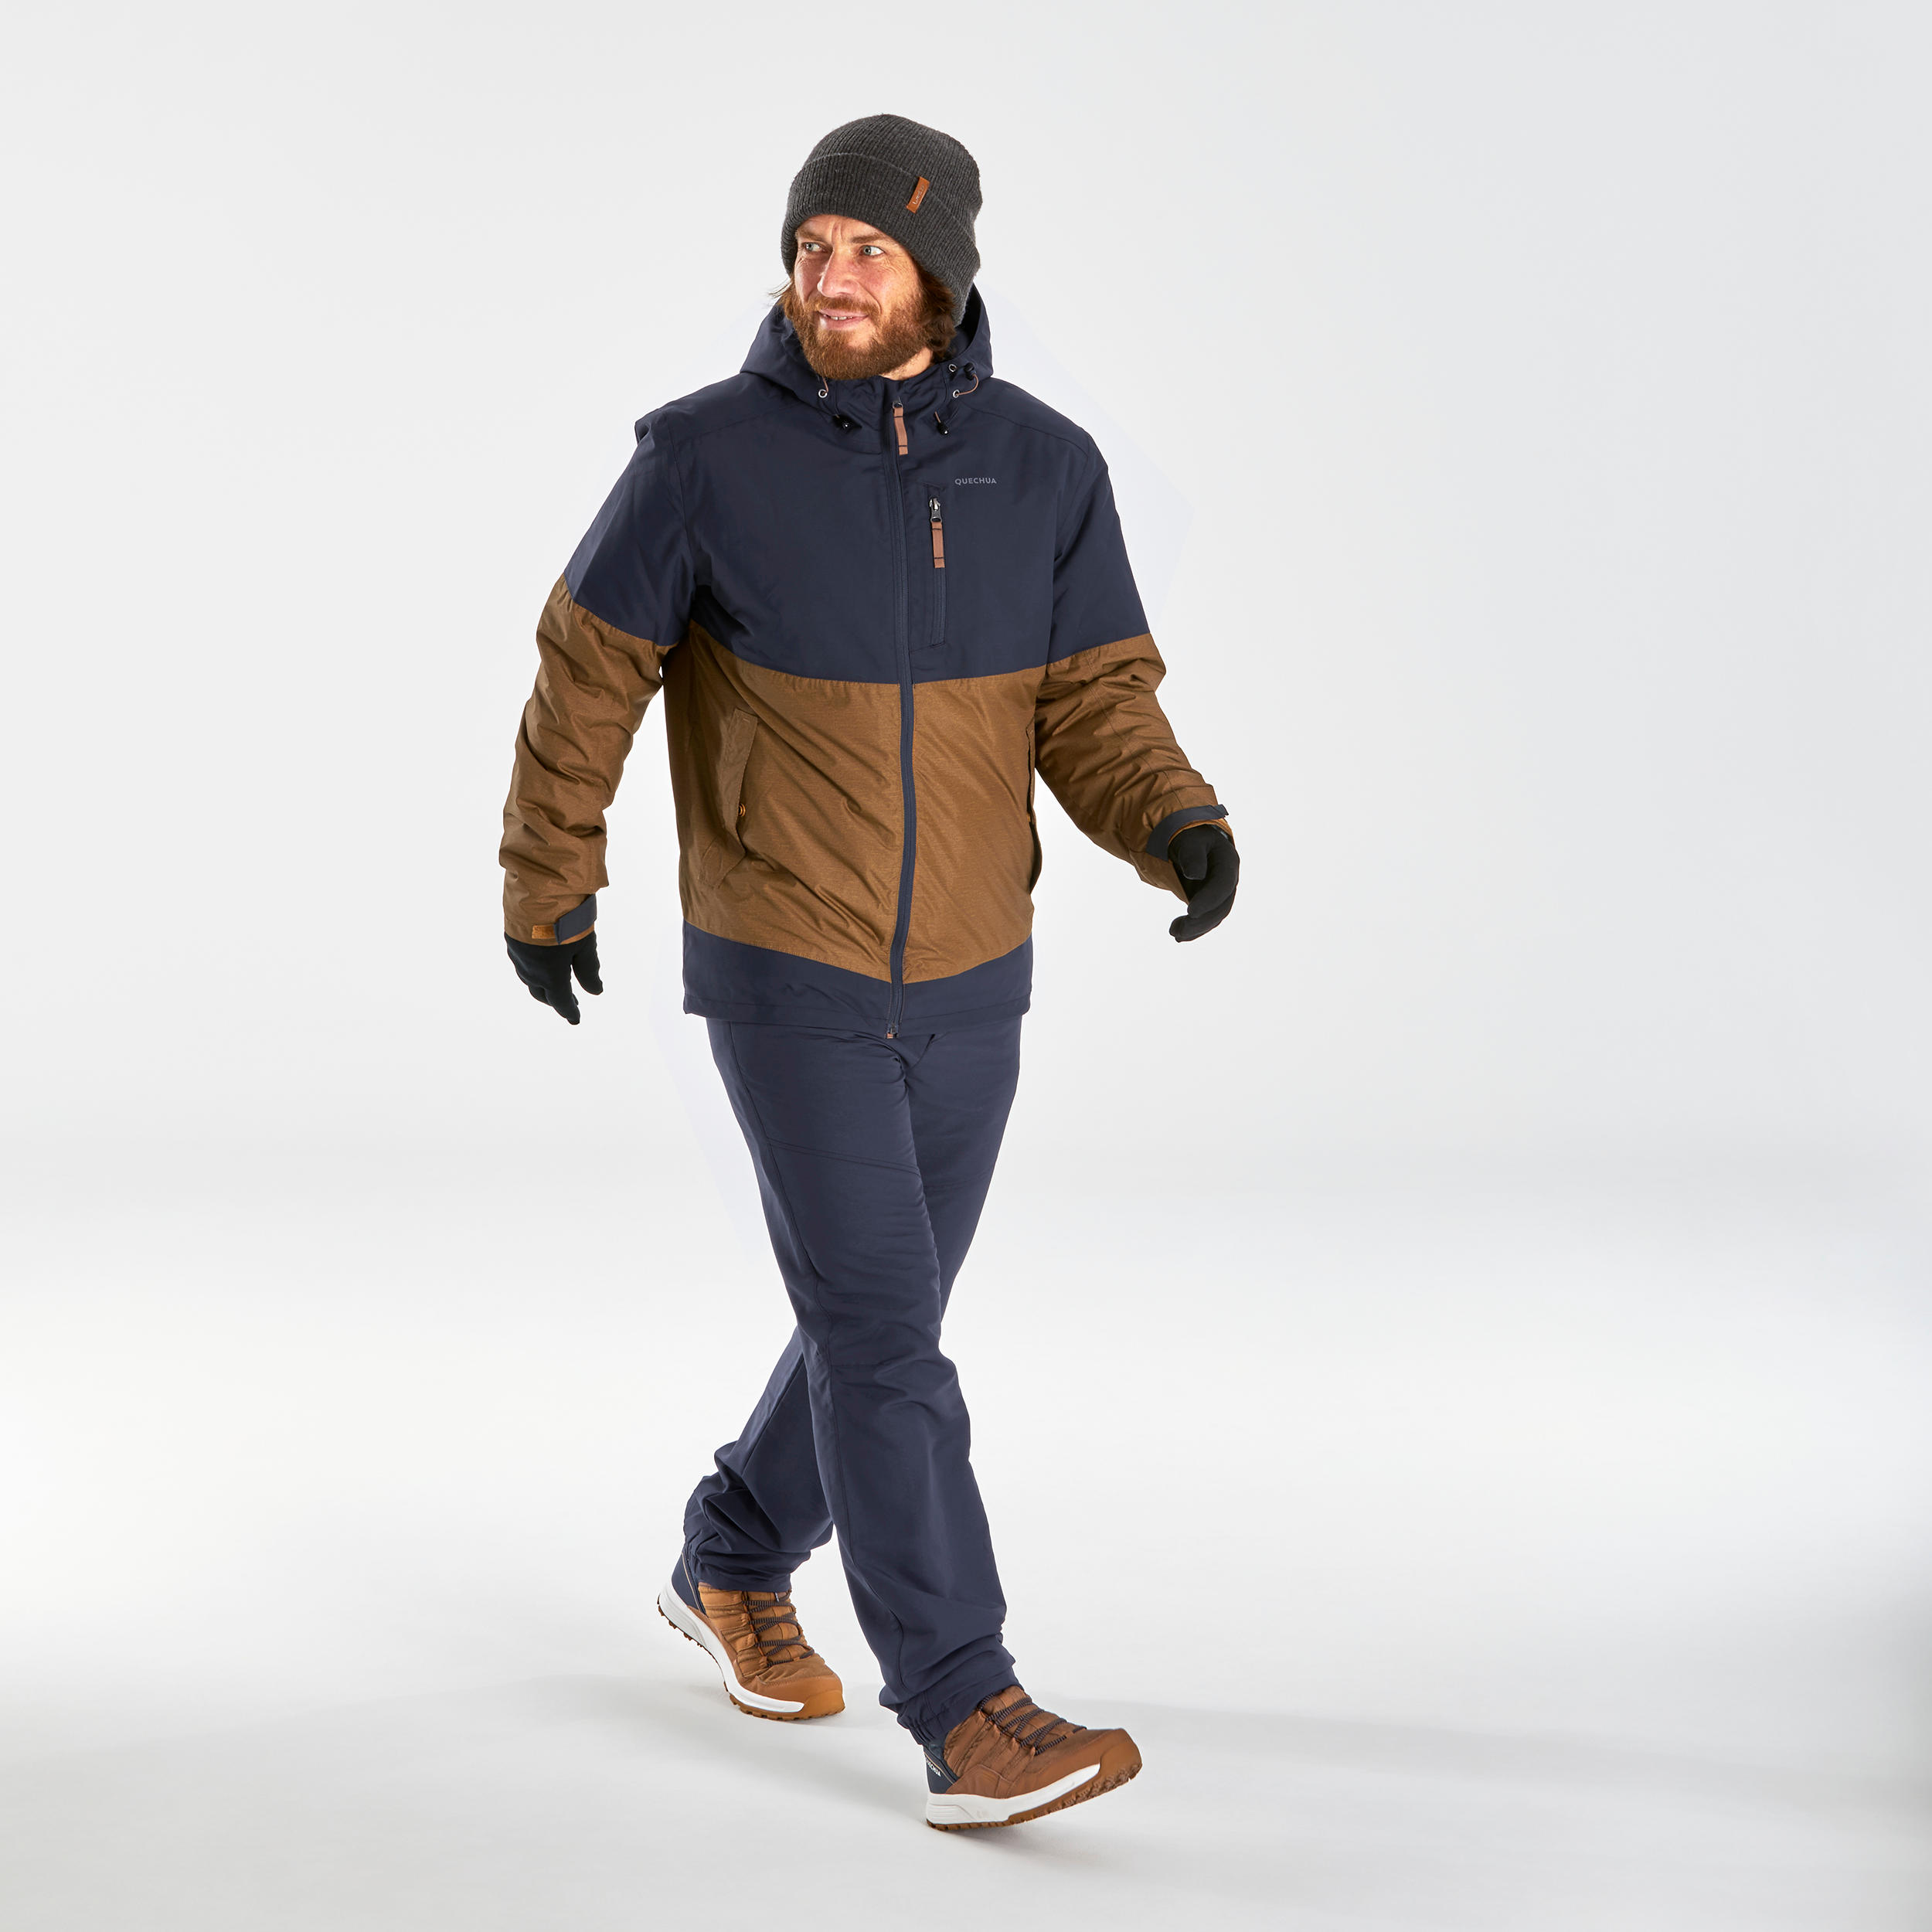 Men’s Waterproof Winter Hiking Jacket - SH100 X-WARM -10°C 2/11